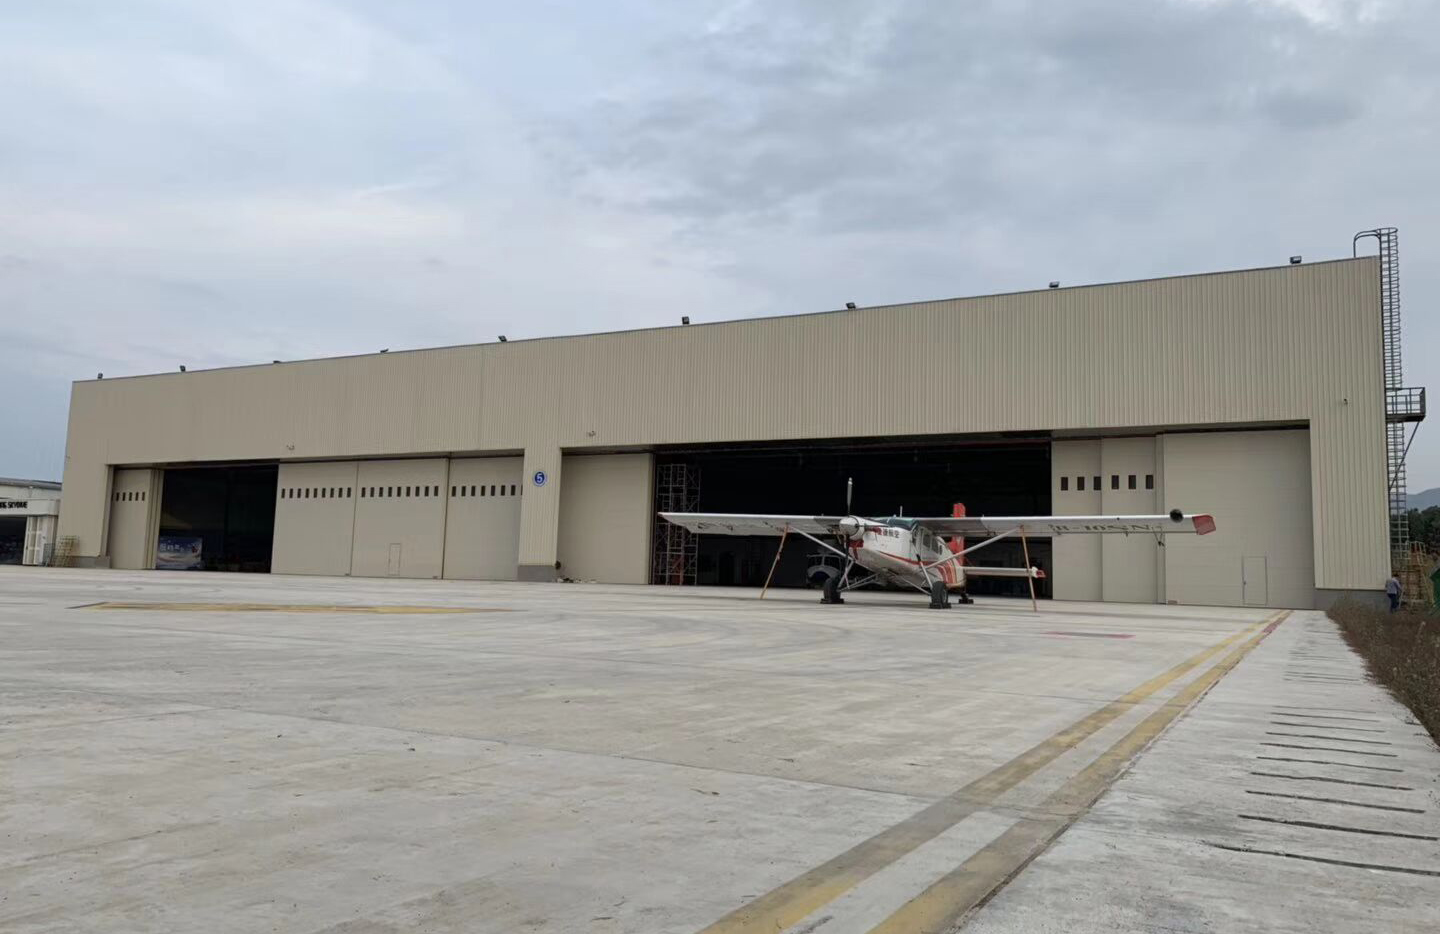 Aircraft Hangar Project in Jordan